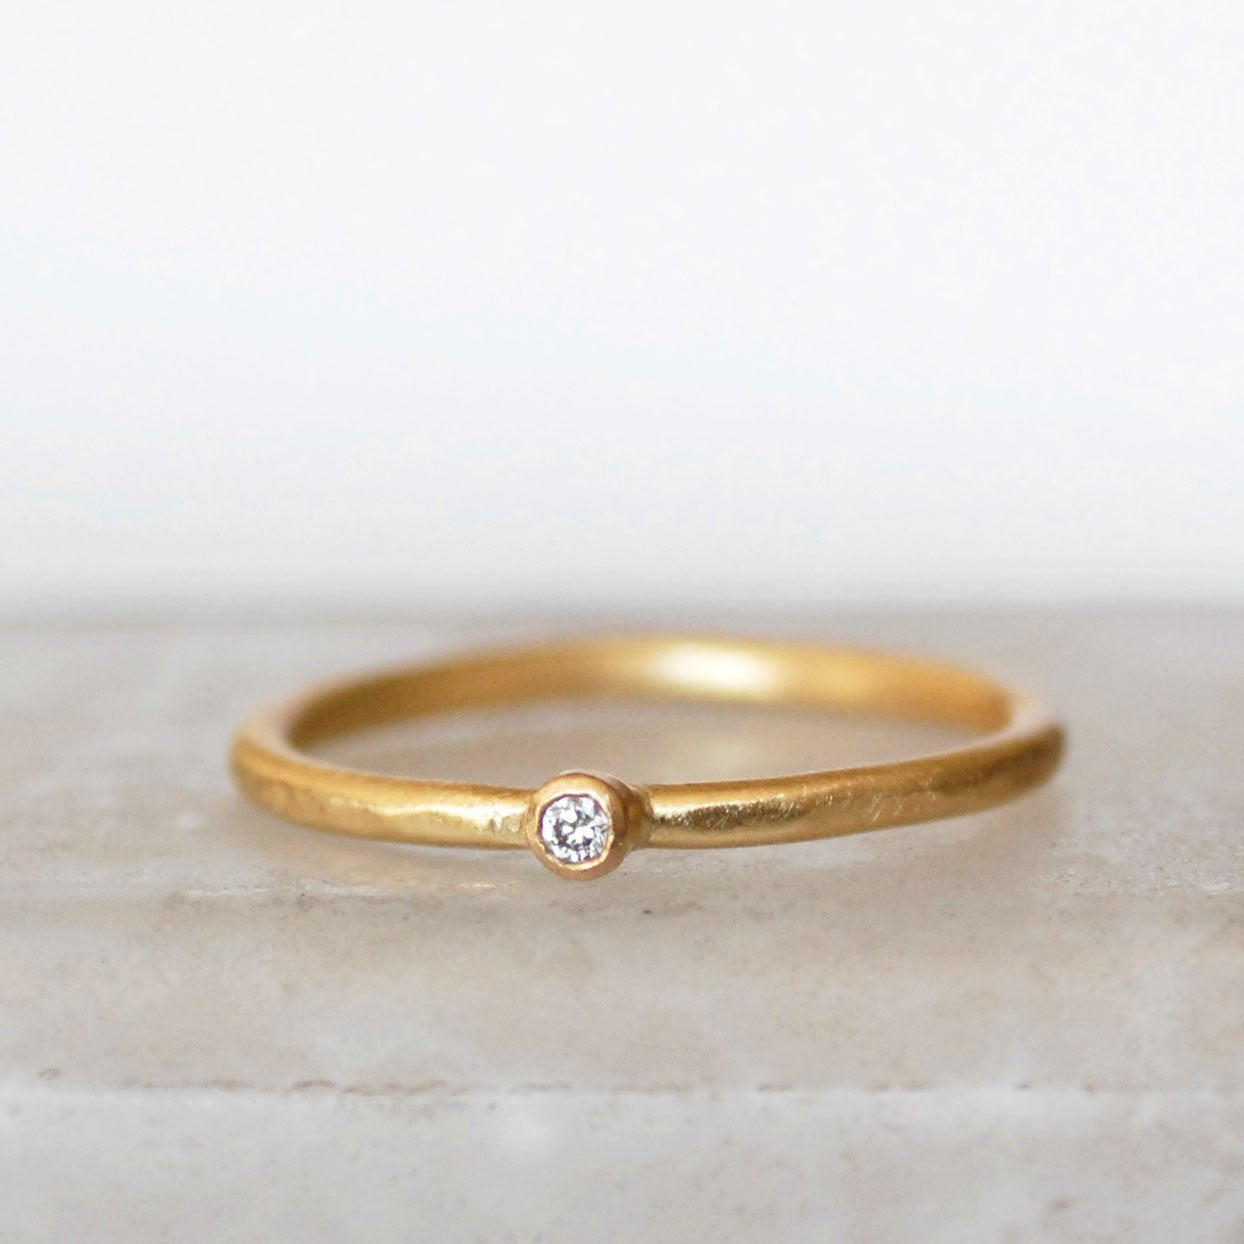 Small Diamond Rings
 Tiny Diamond Ring 2mm Diamond Ring Small Diamond Gold